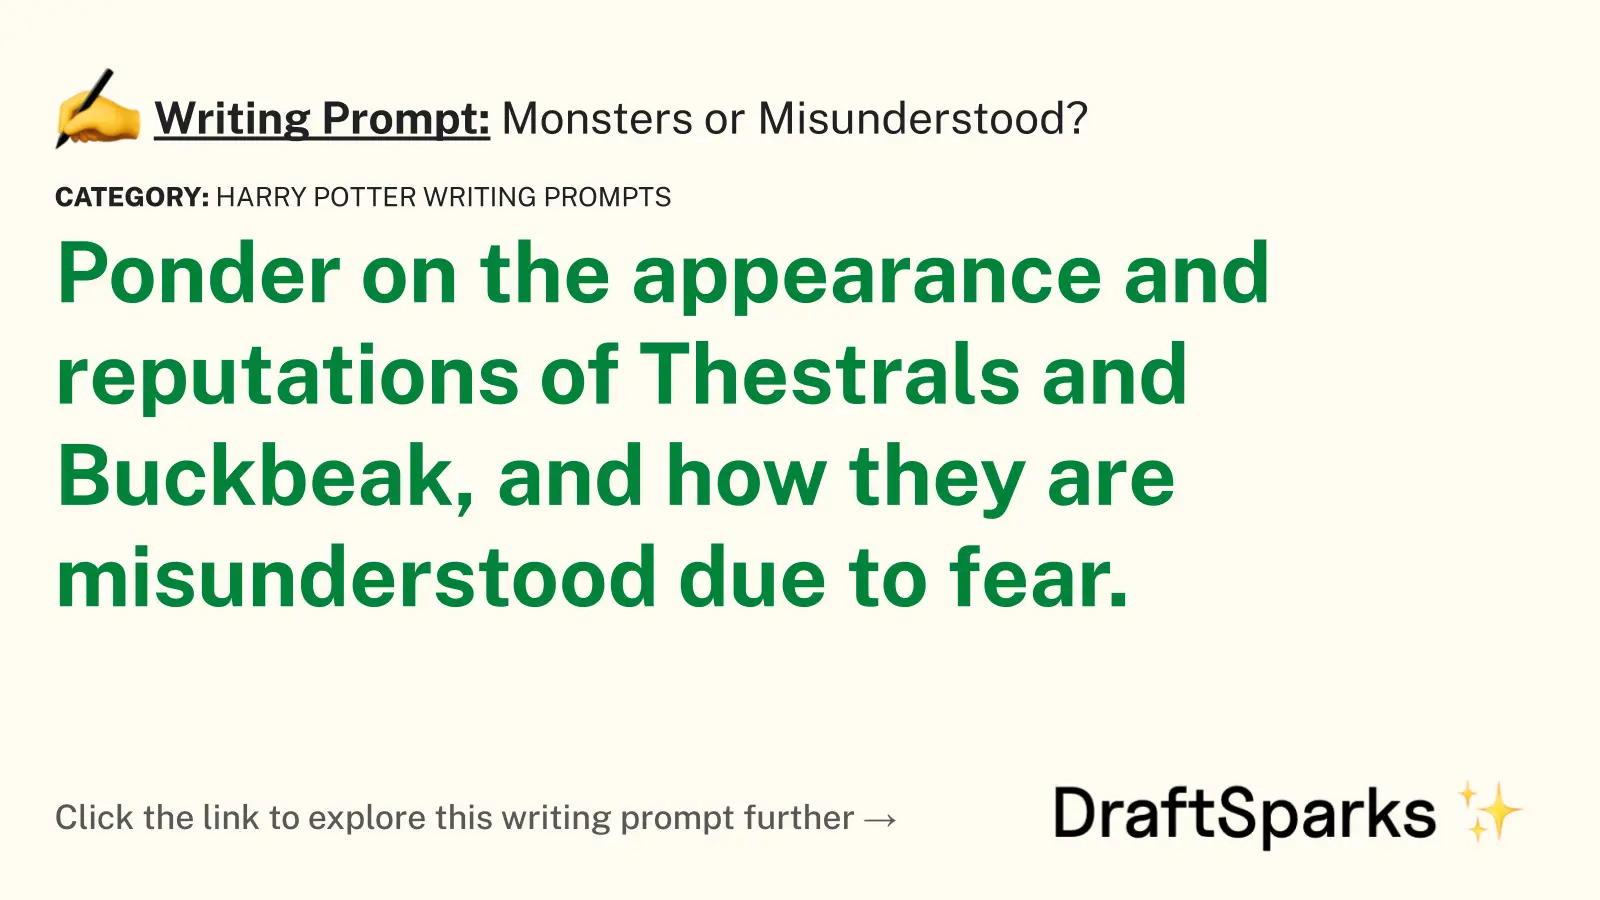 Monsters or Misunderstood?